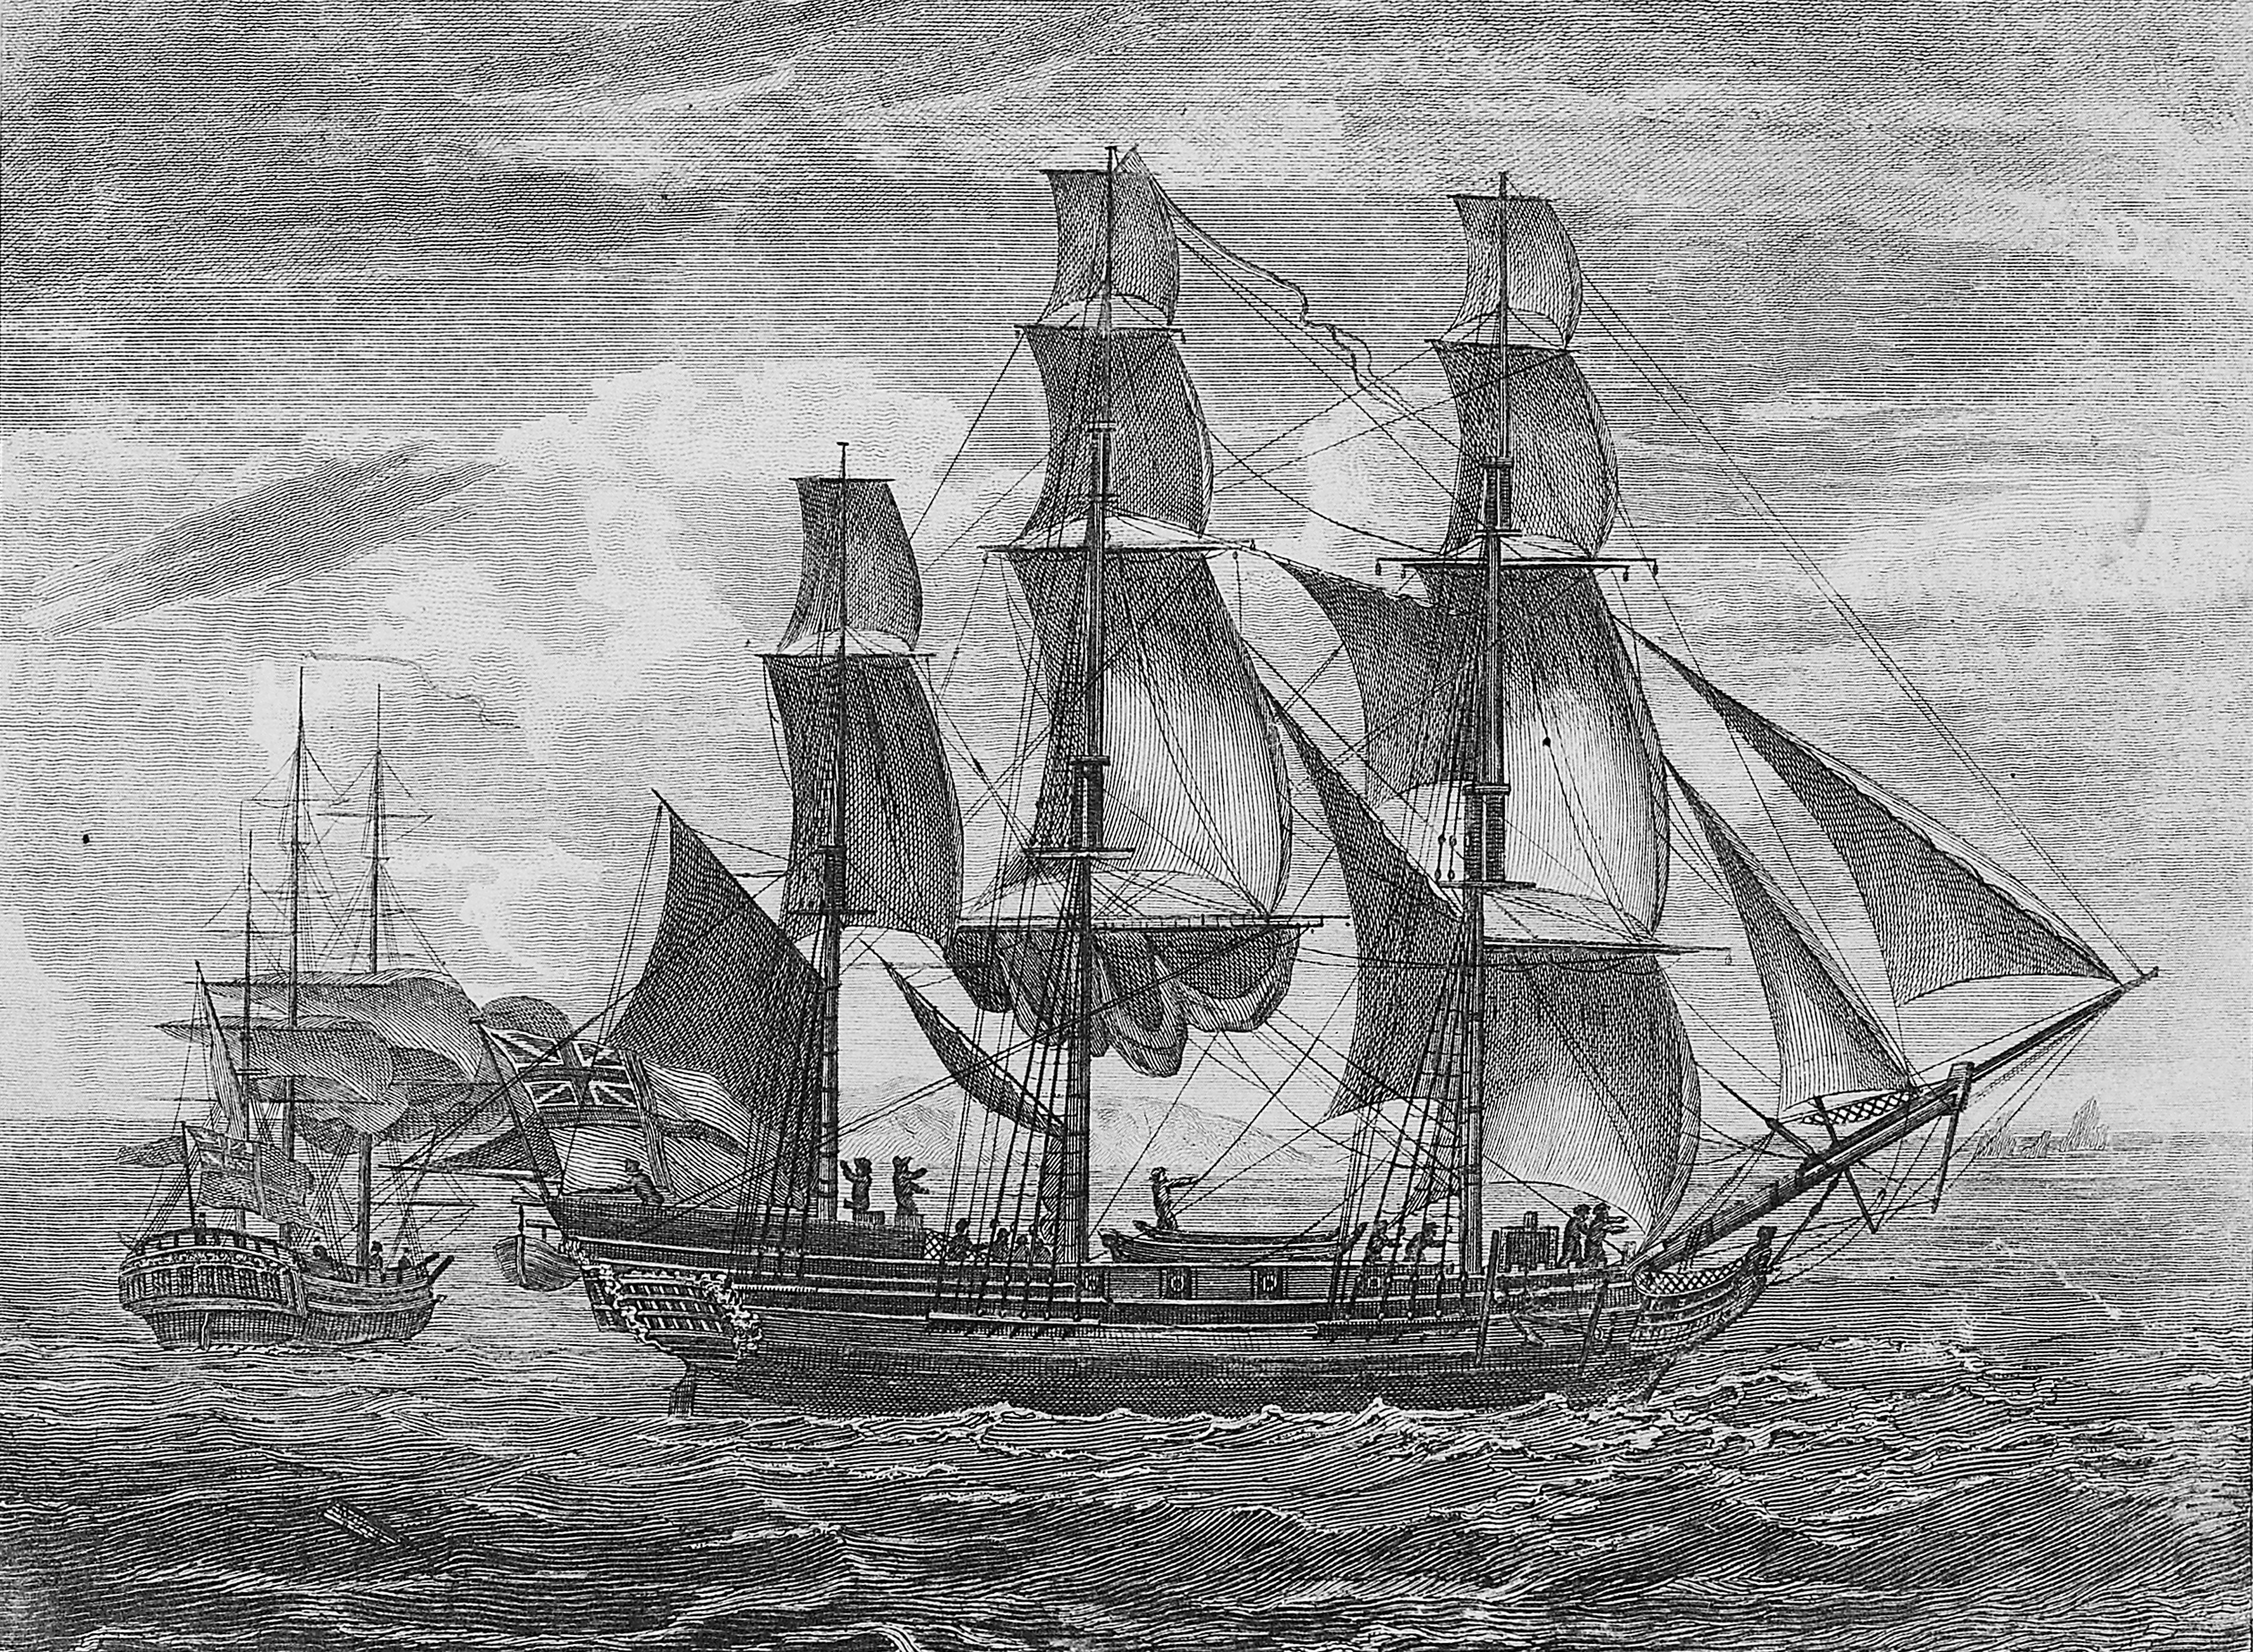 Bejelentették, hogy megtalálták Cook kapitány hajóját, az Endeavourt, és egymásnak estek a kutatók